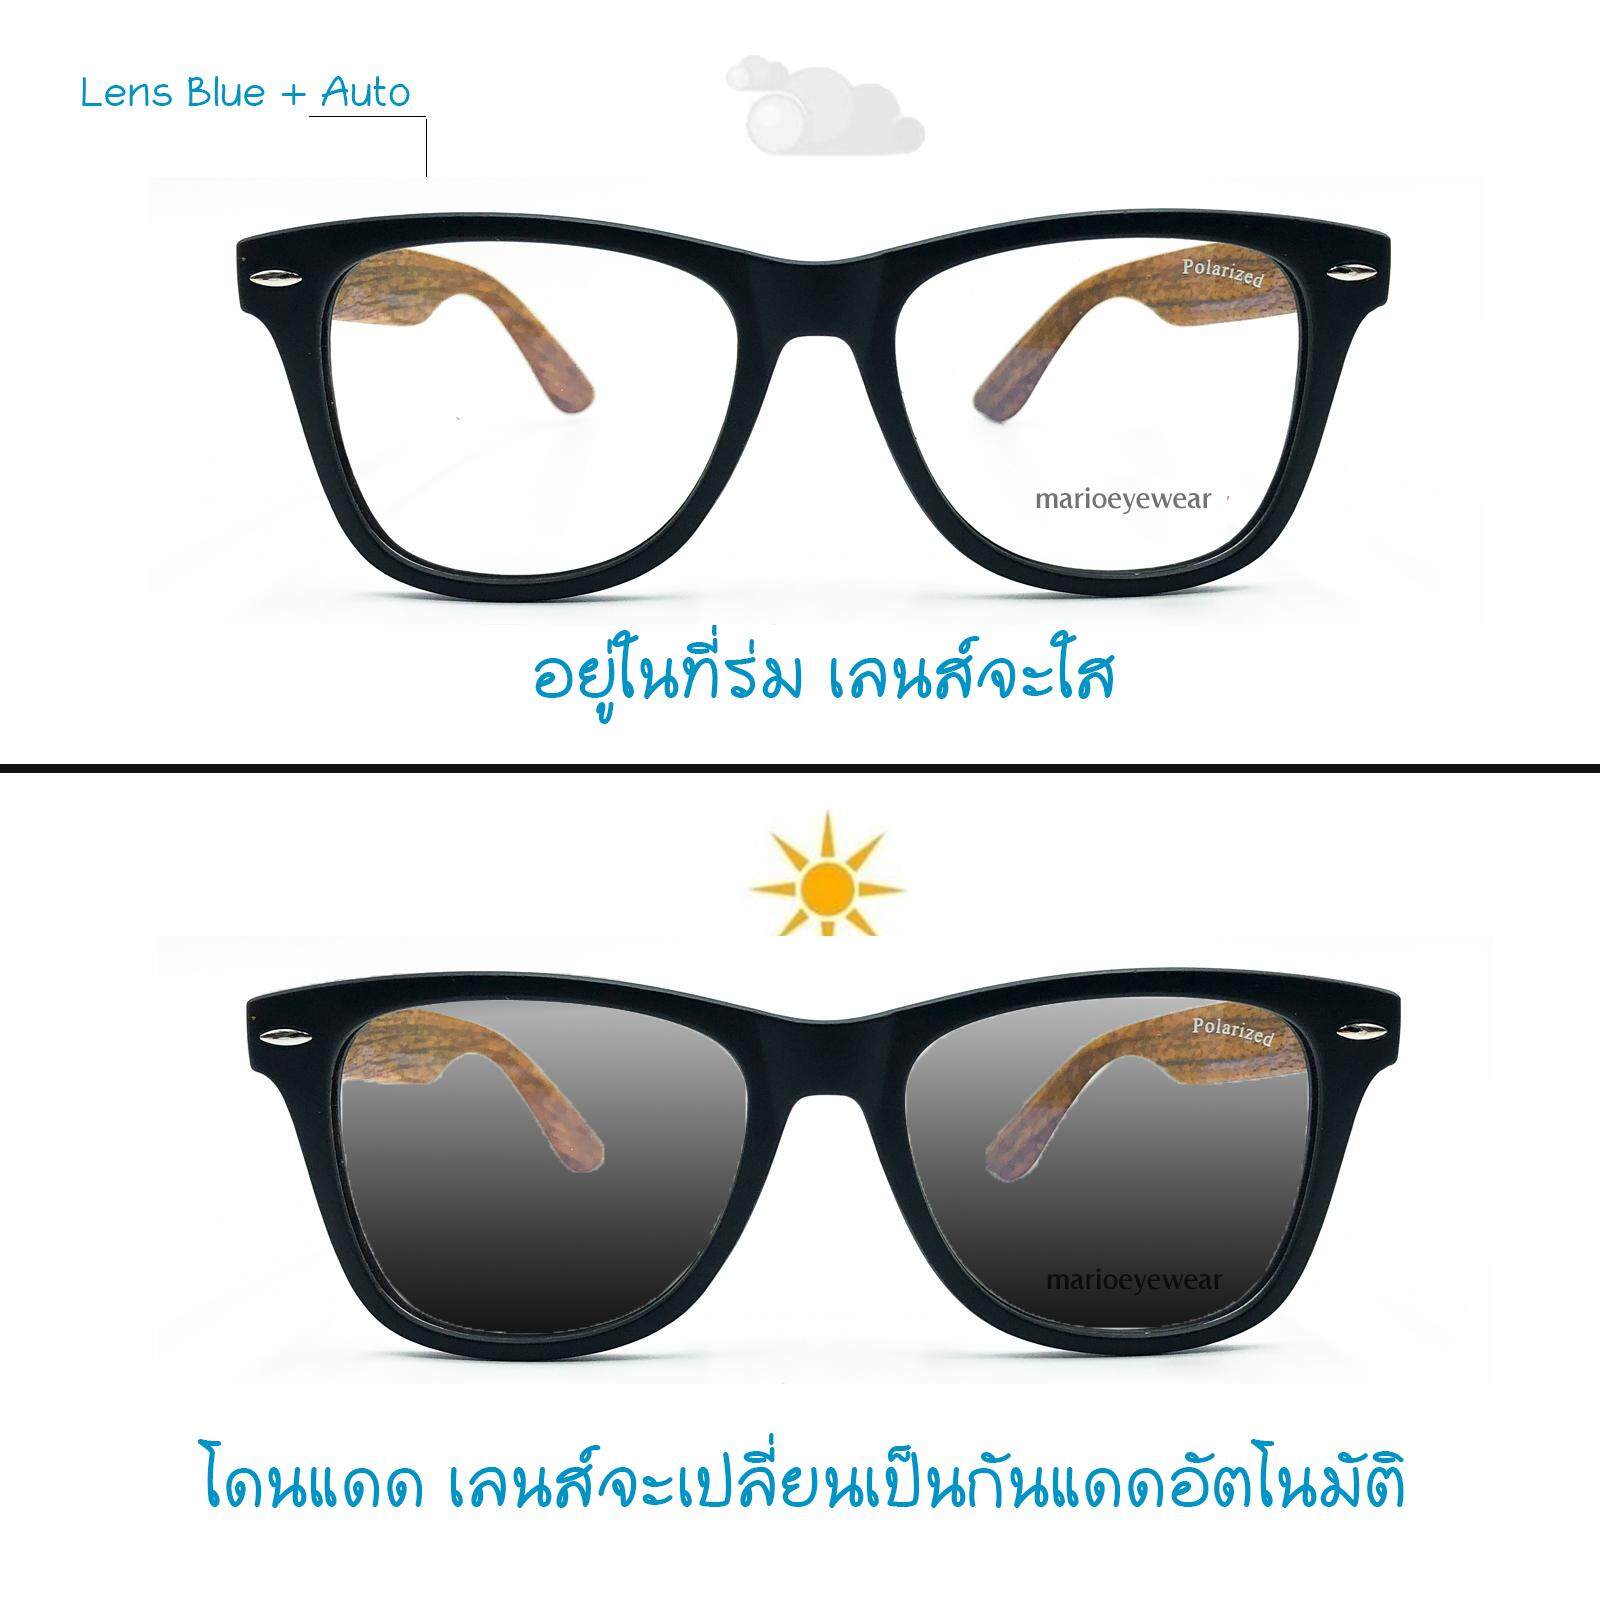 แว่นกรองแสงน้ำหนักเบาพร้อมเลนส์บลูบล็อค+ออโต้ (แท้)  กรองแสงสีฟ้า+ออกแดดเปลี่ยนสี(สำหรับสายตาปกติ) Blue+Auto